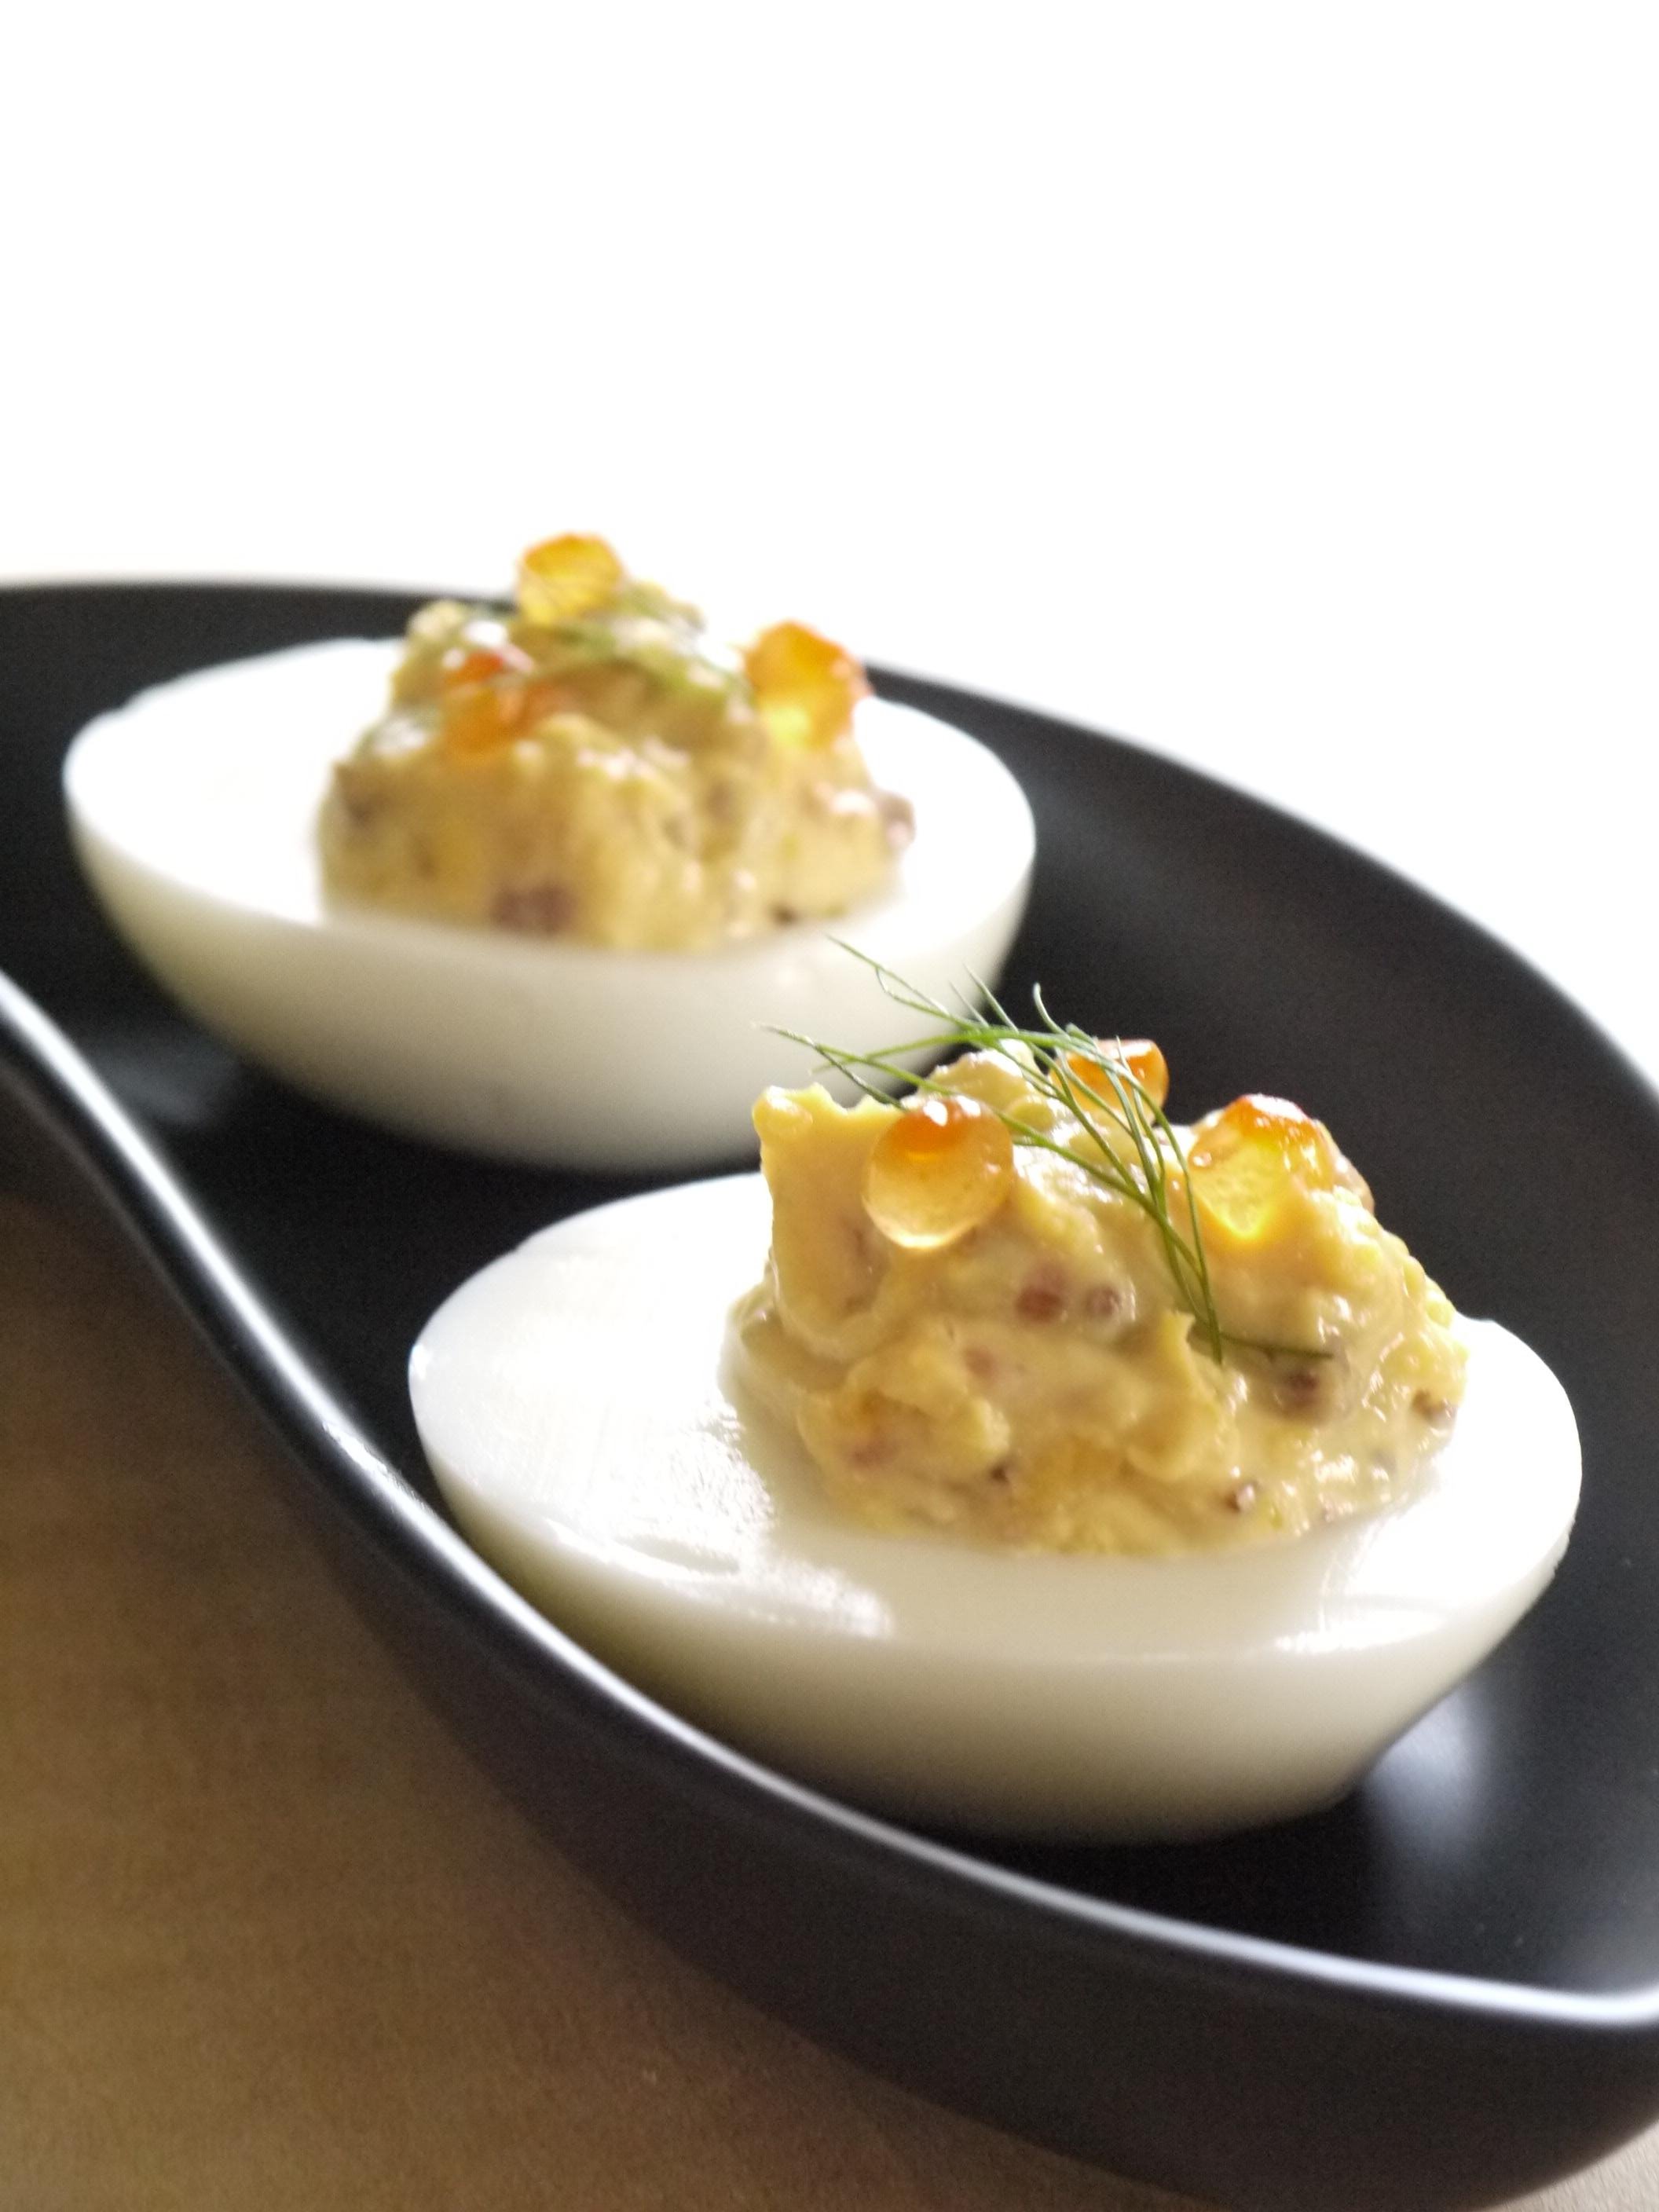 イースターの卵料理 デビルドエッグのレシピ 作り方 Satomi Maeda 料理教室検索サイト クスパ